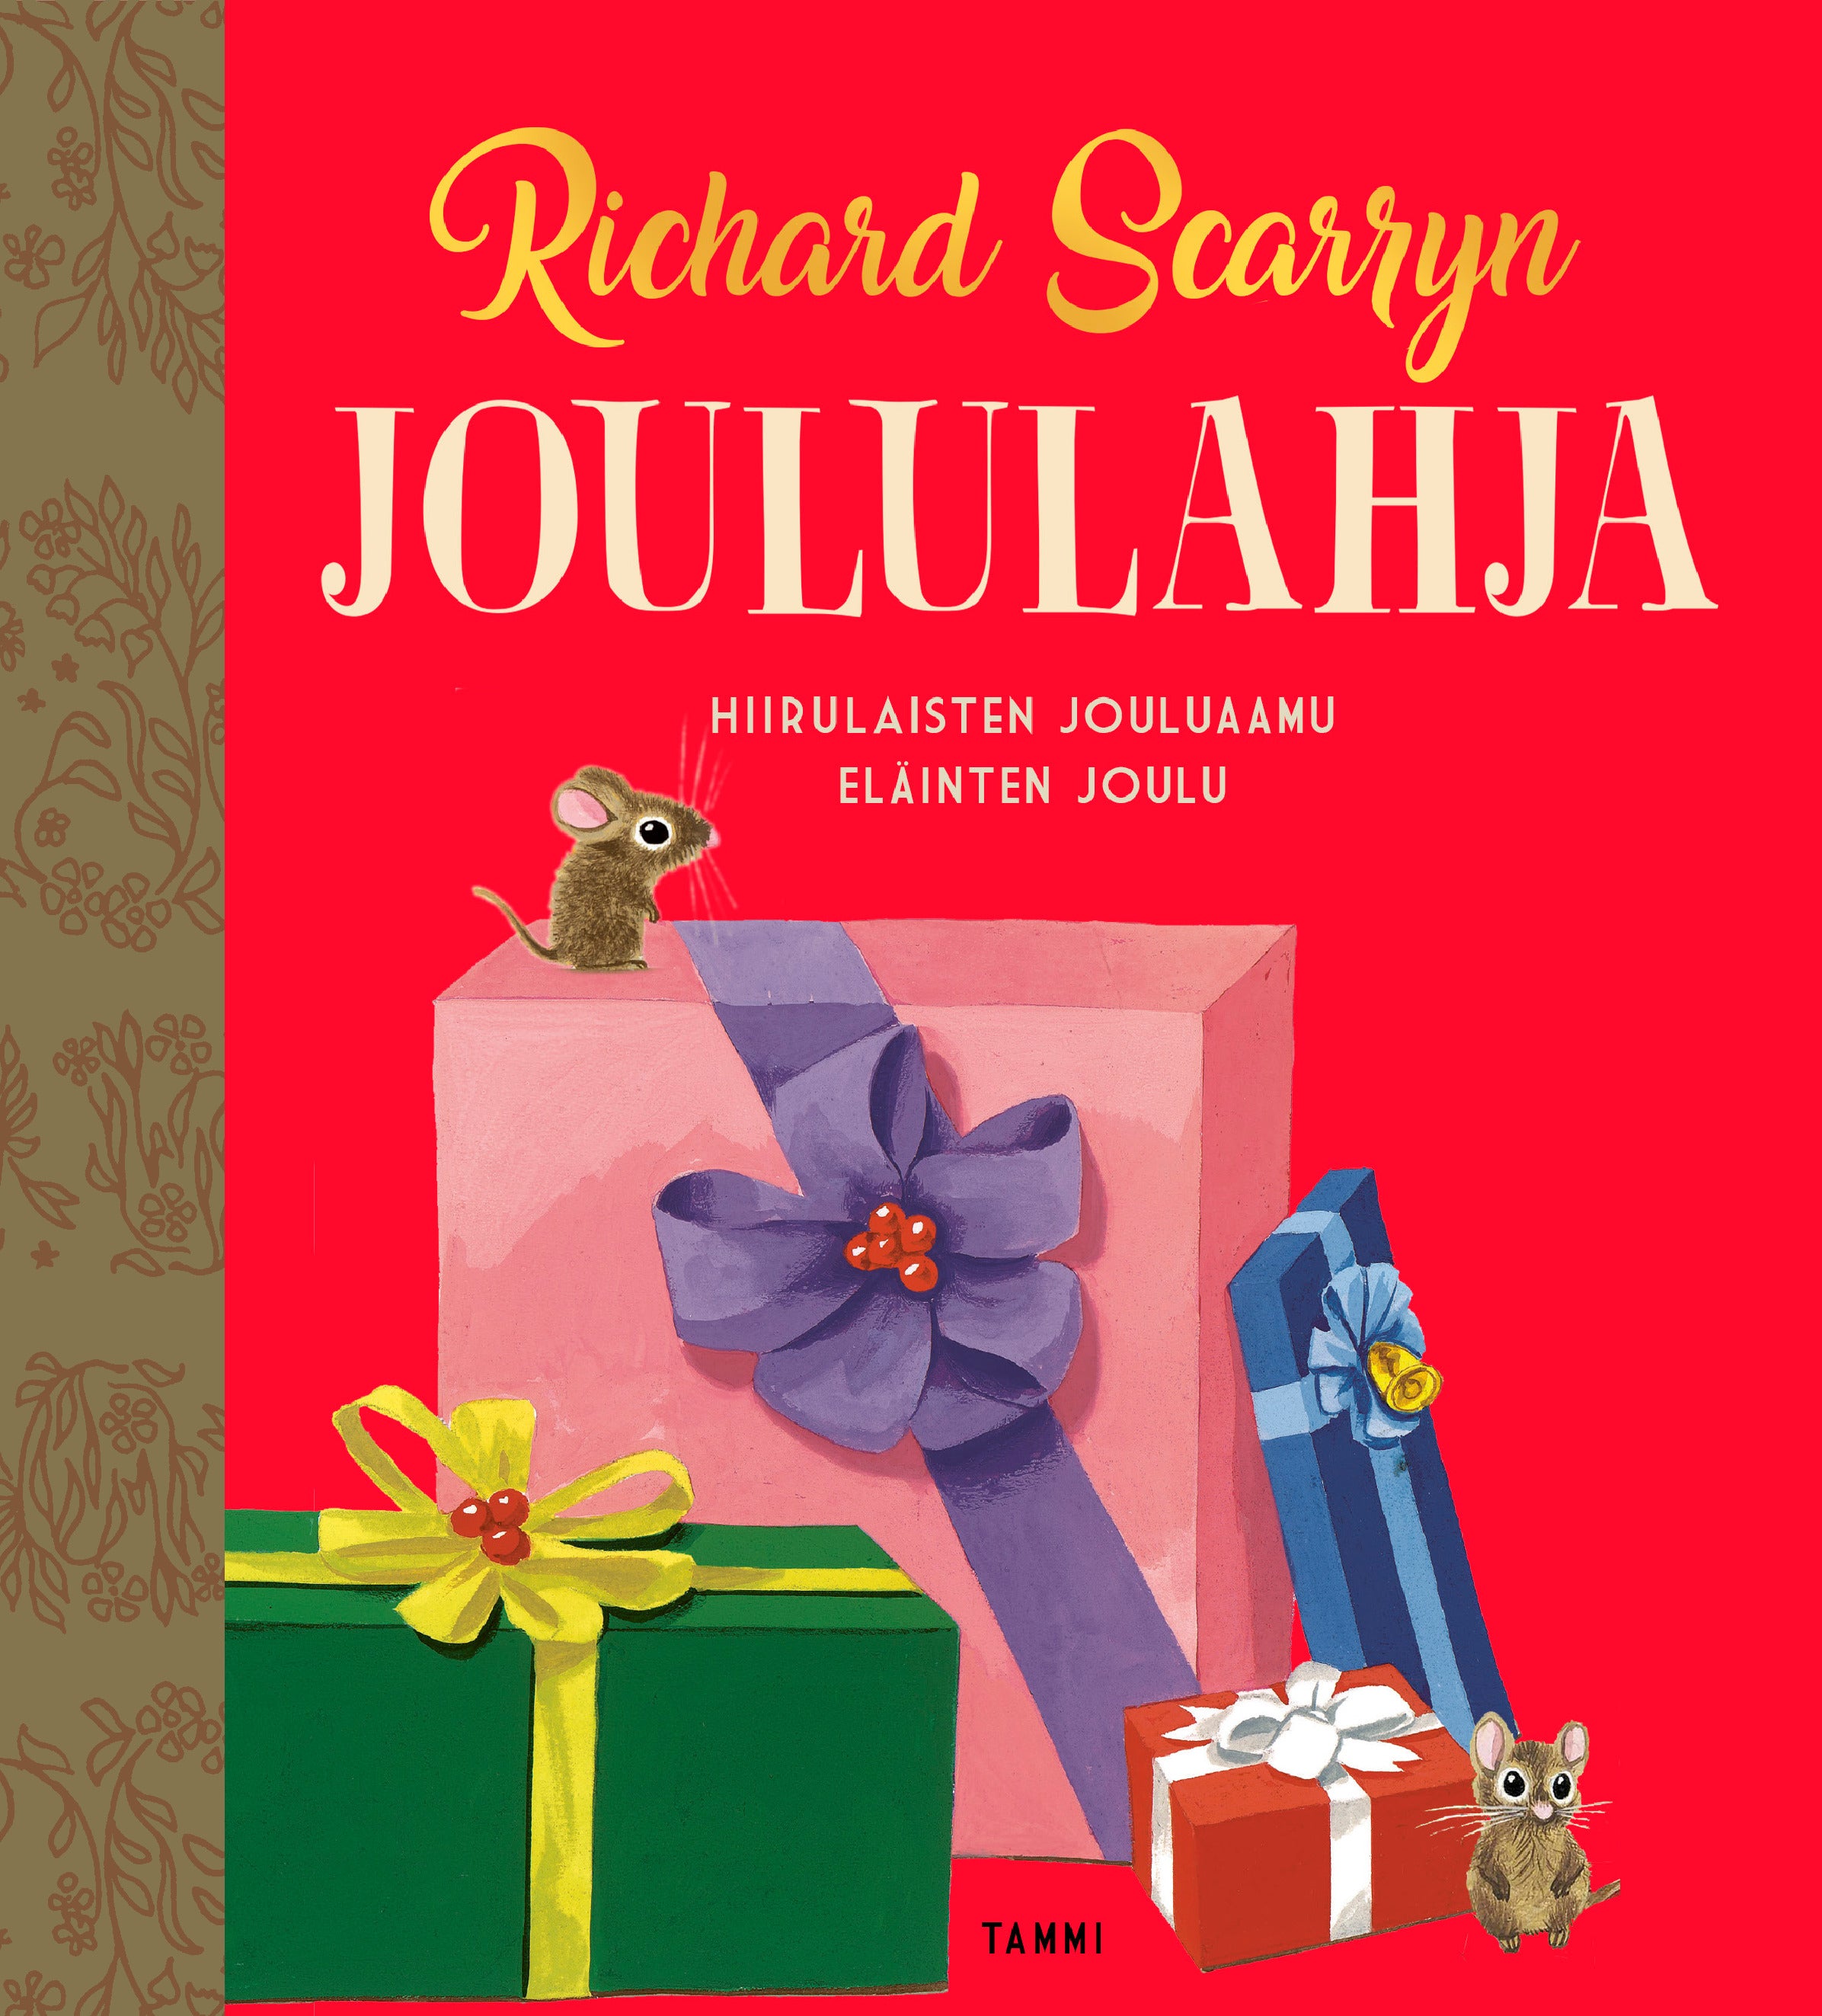 Richard Scarryn joululahja TKK – Richard Scarry, Kathryn B. Jackson –  Kirja-verkkokauppa